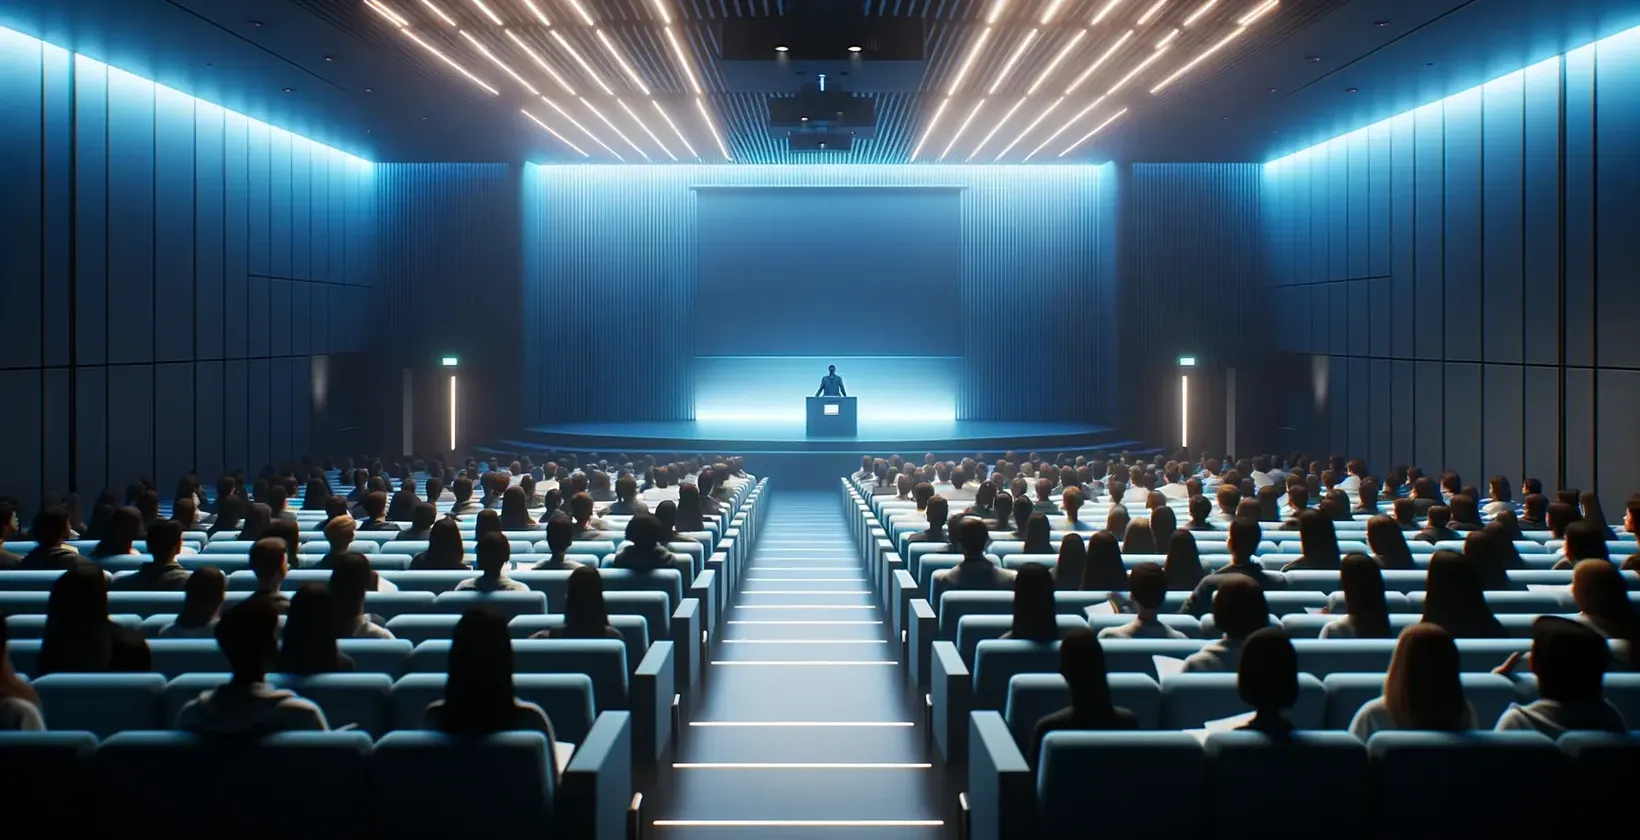 Mediul sălii de conferințe este slab luminat, cu participanții cu fața spre o scenă și un vorbitor pe podium.